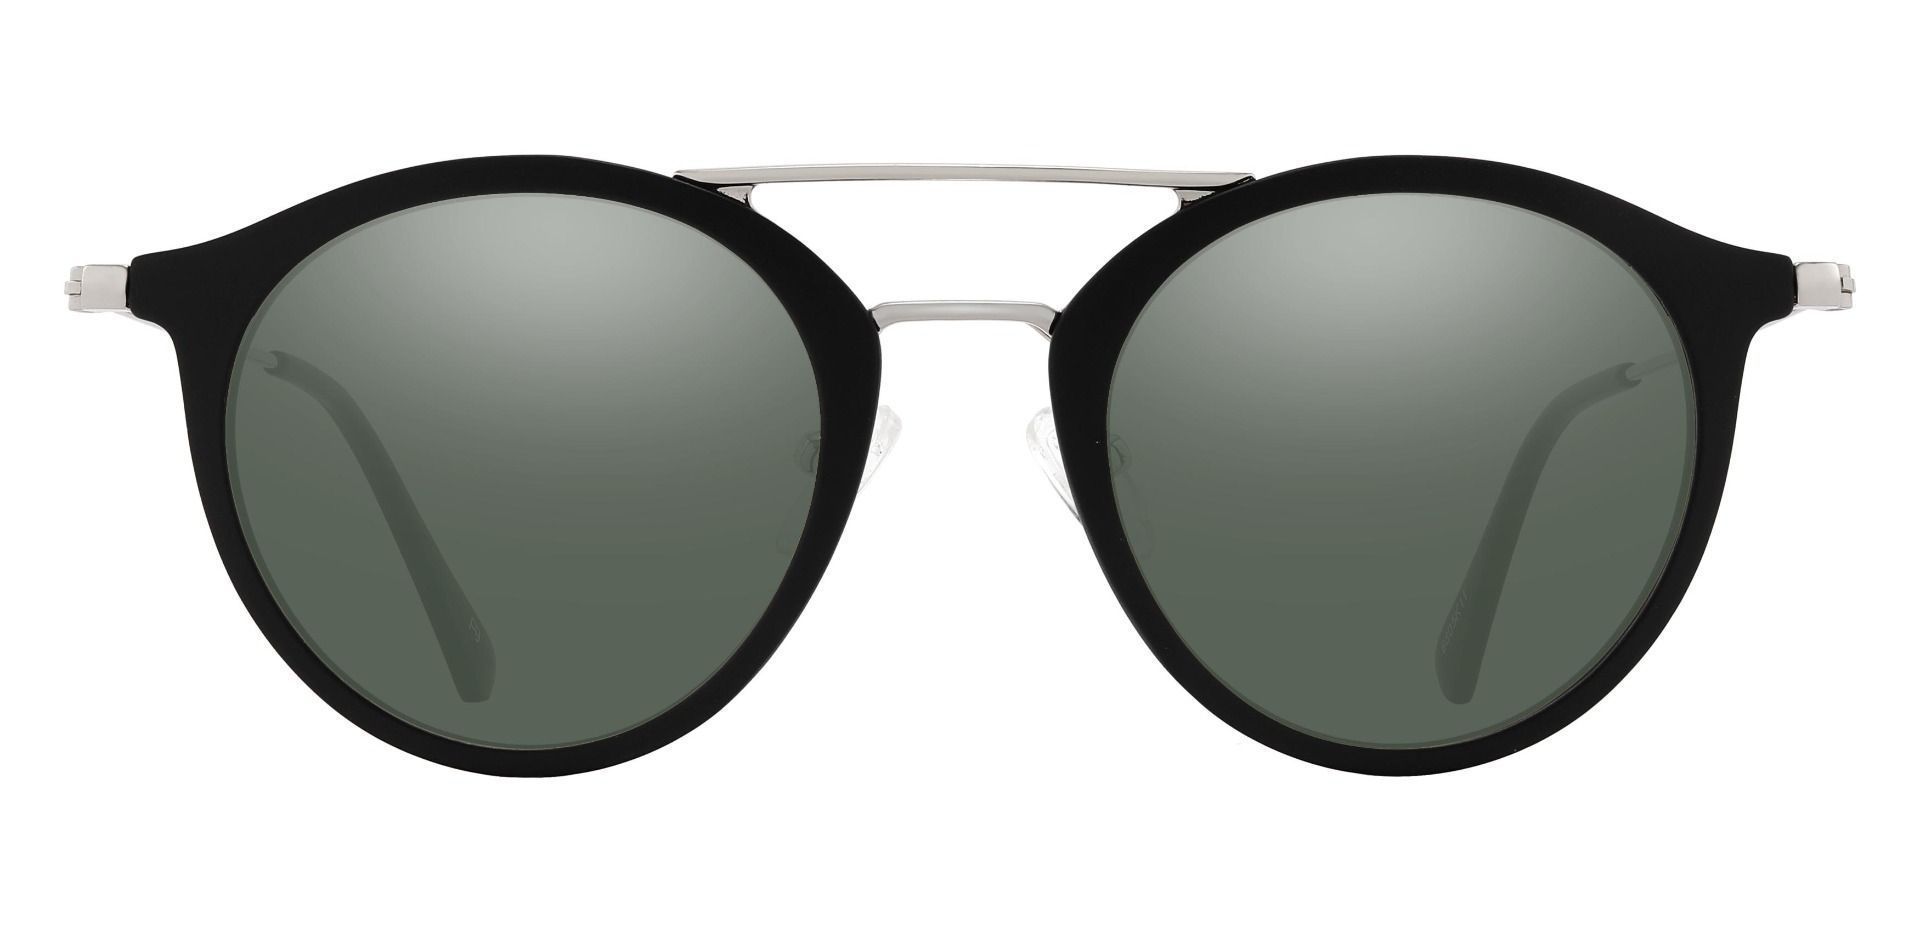 Malden Aviator Prescription Sunglasses - Black Frame With Green Lenses